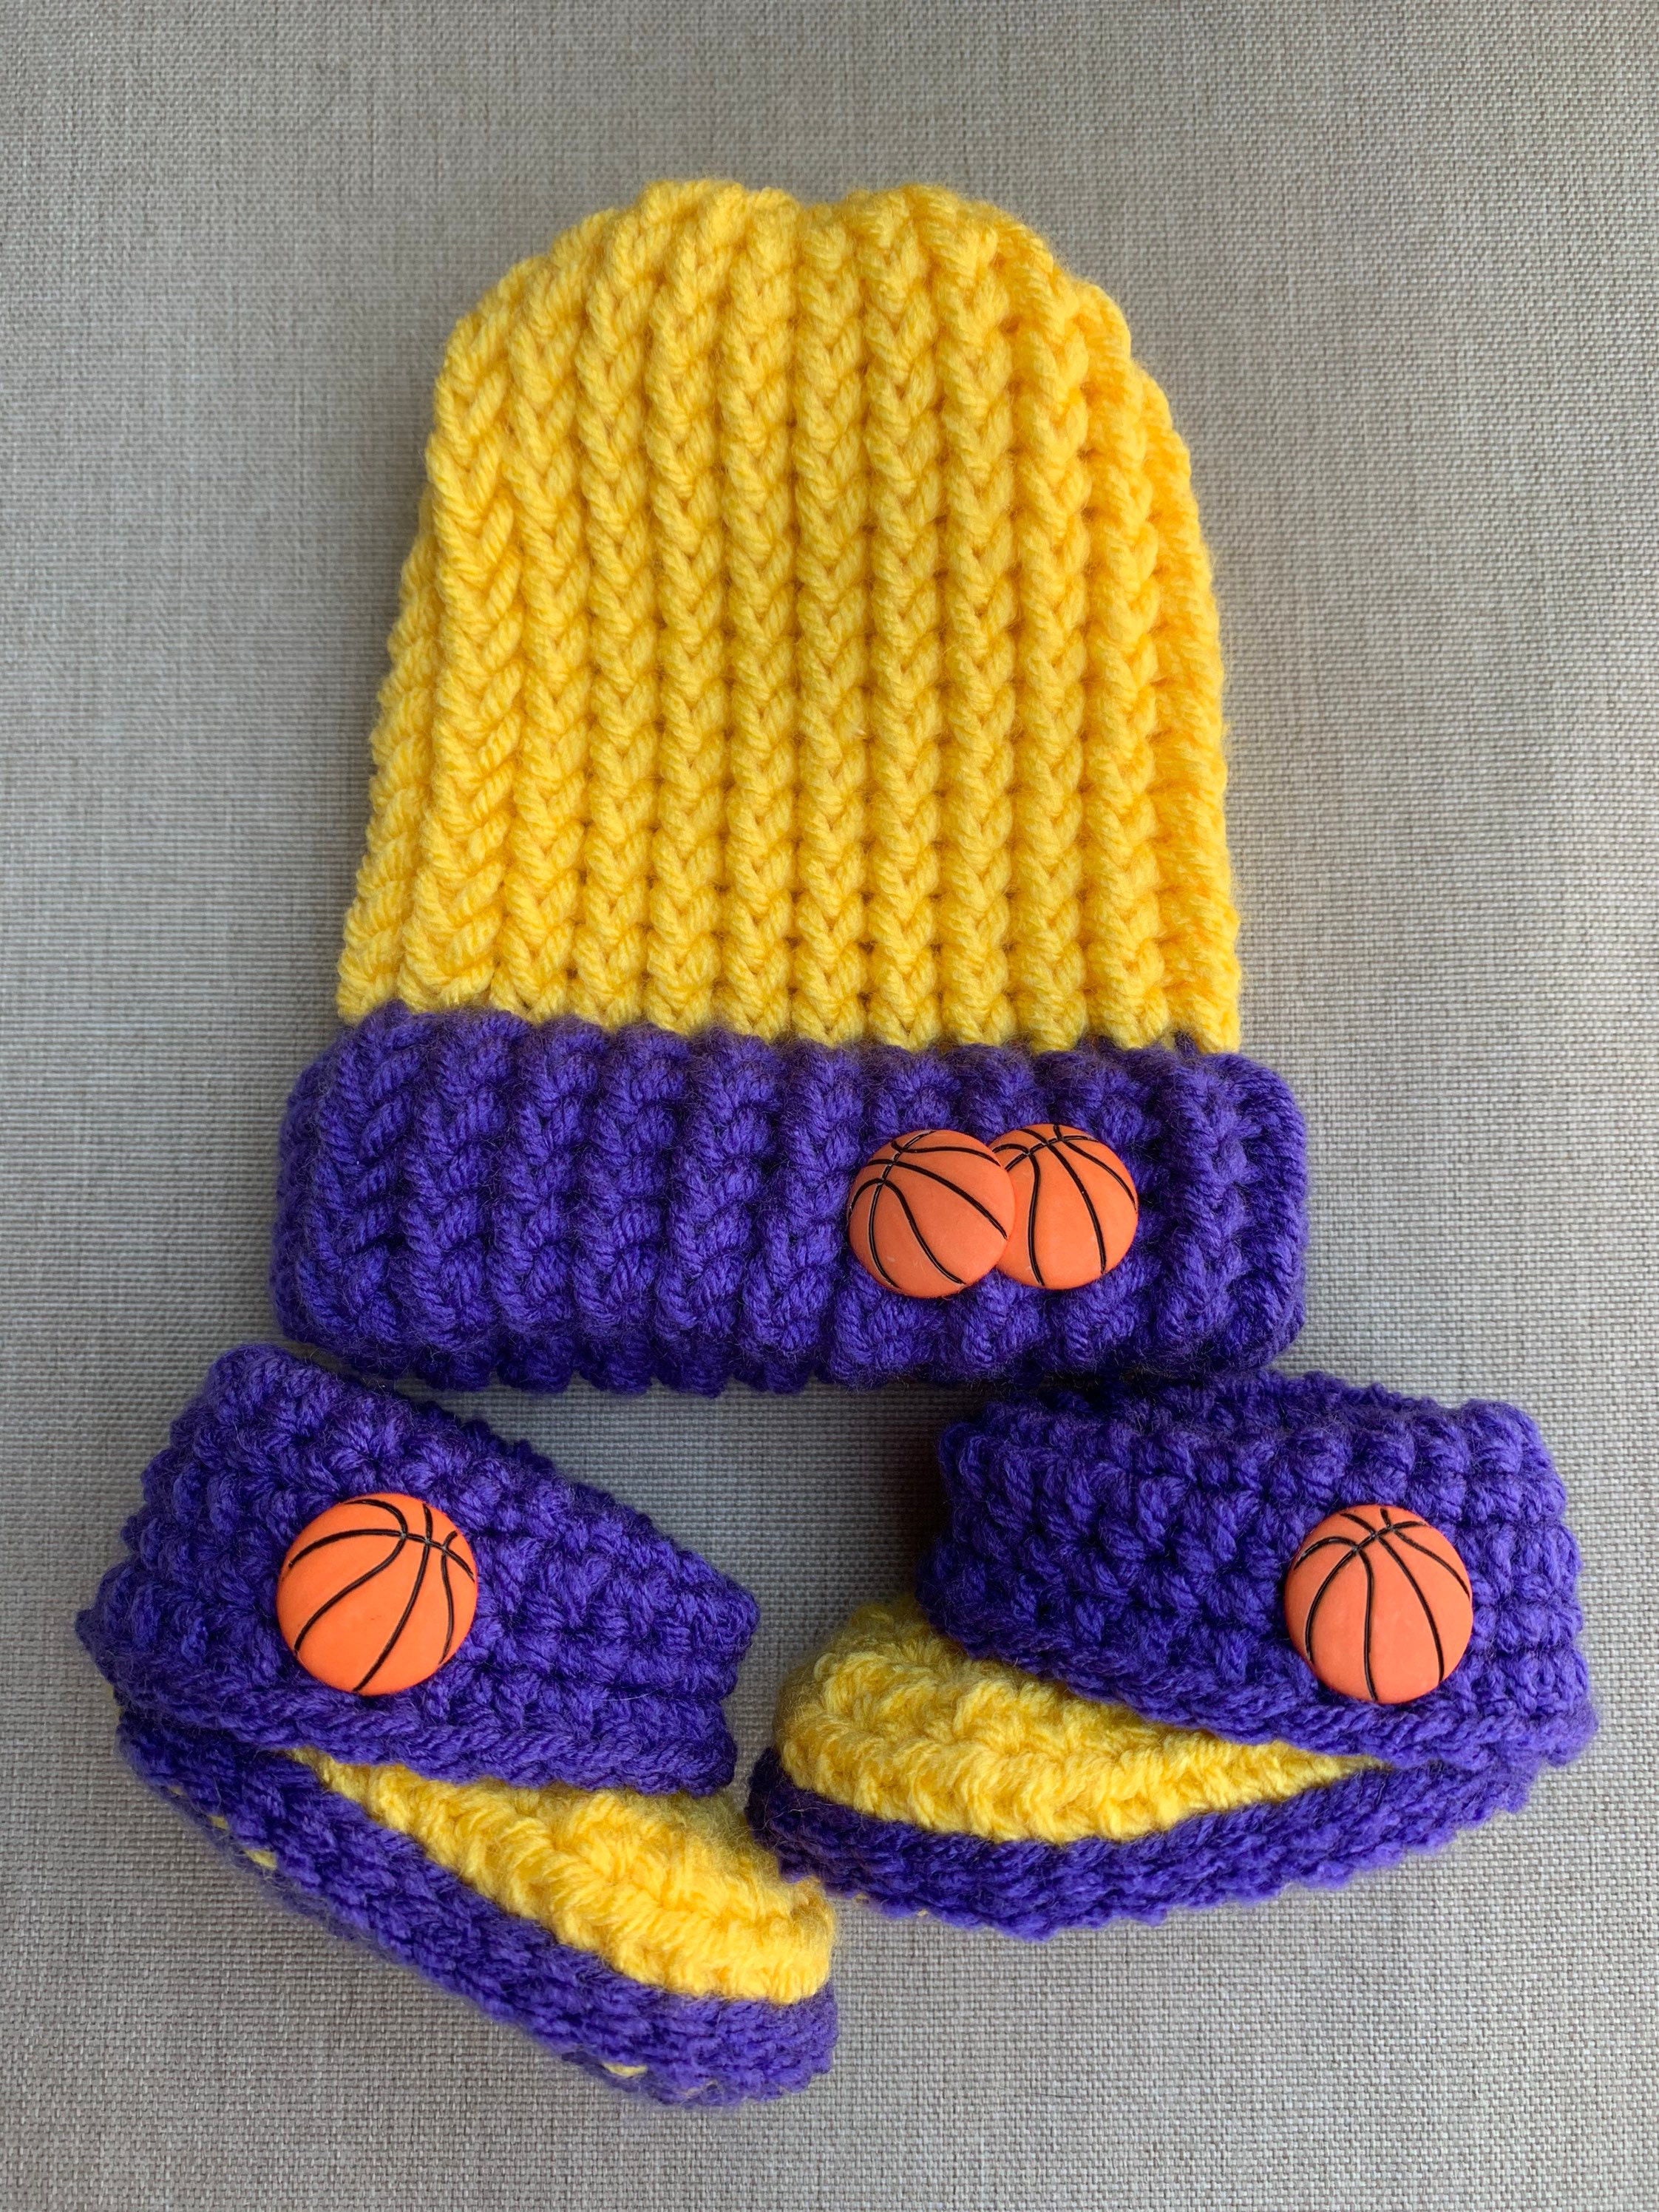 LA Lakers Basketball Outfit Crochet pattern by CraftyStitchaway